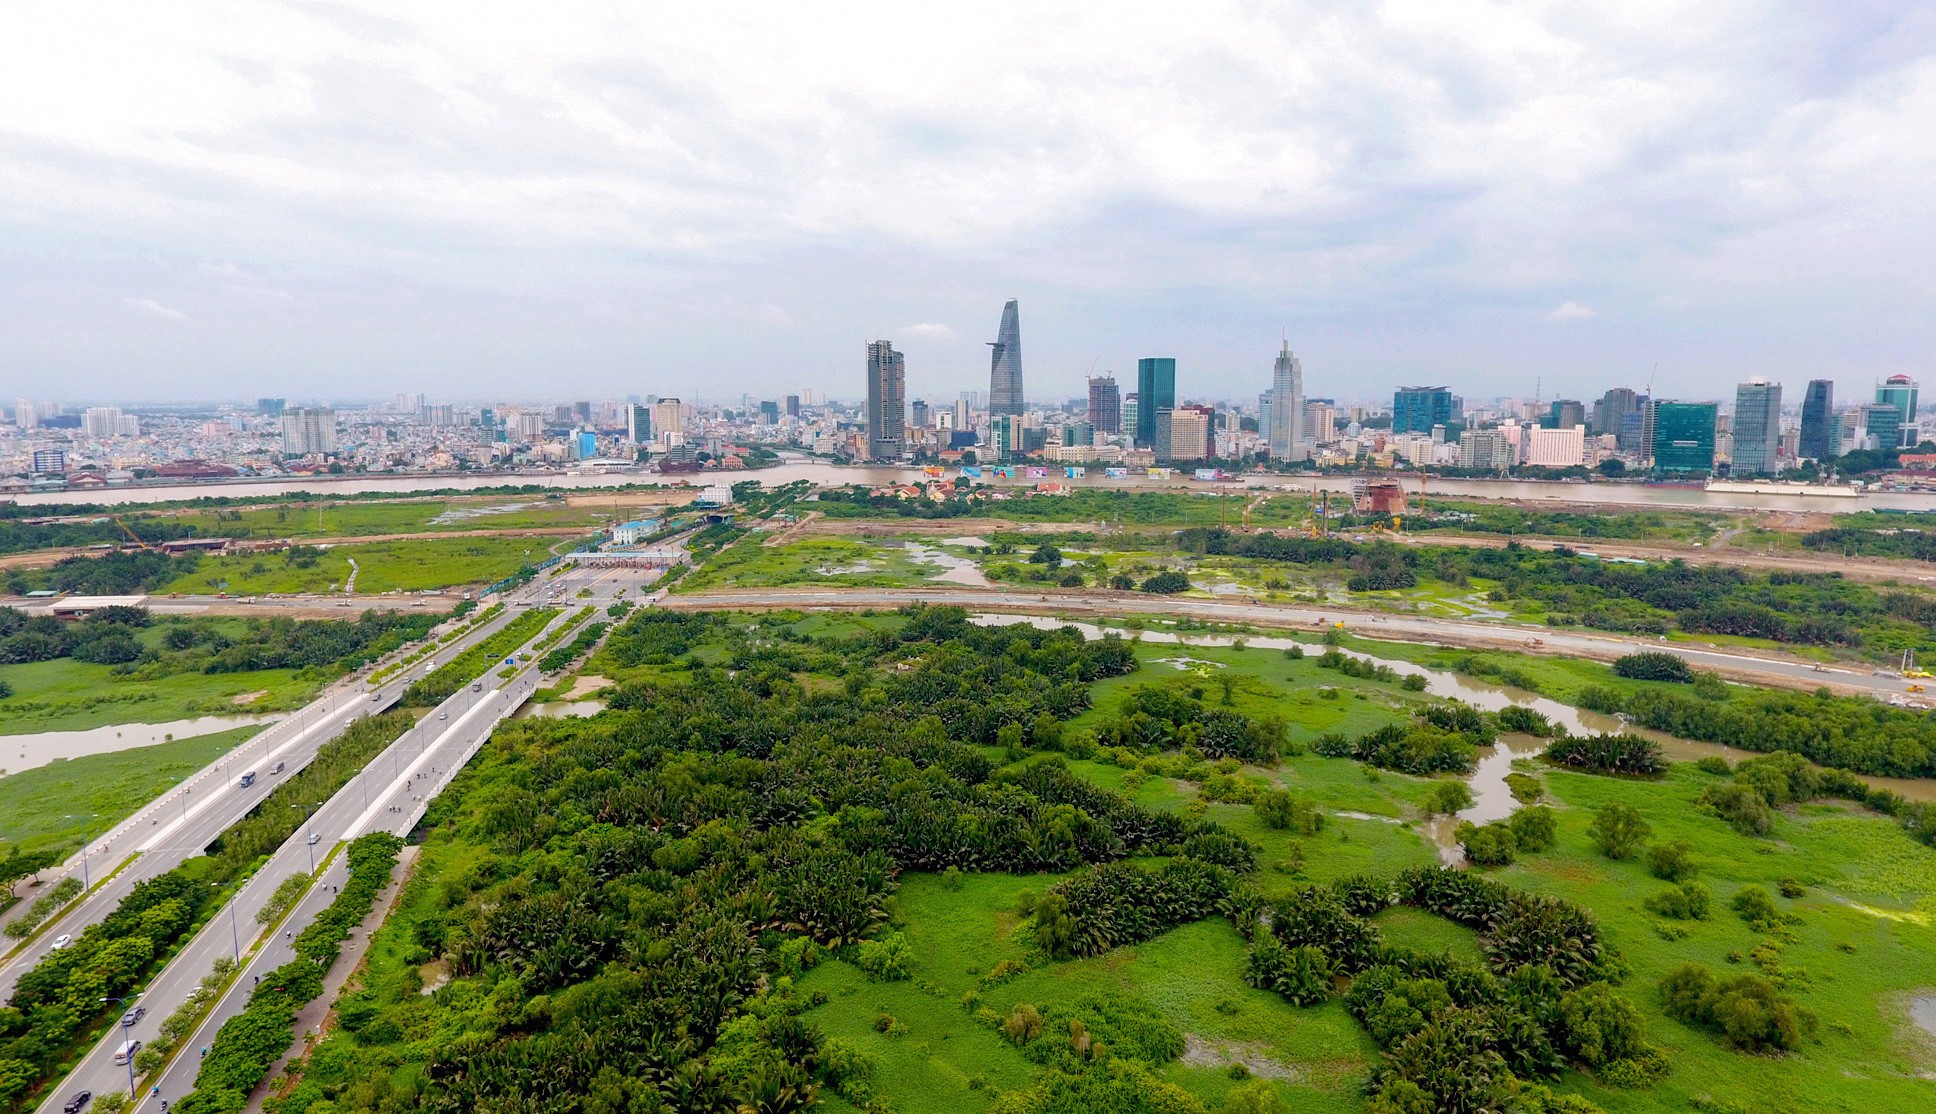 
Xu hướng tìm kiếm bất động sản đang hướng về các khu vực tỉnh, giáp ranh 2 thành phố lớn là Hà Nội và TP. Hồ Chí Minh
